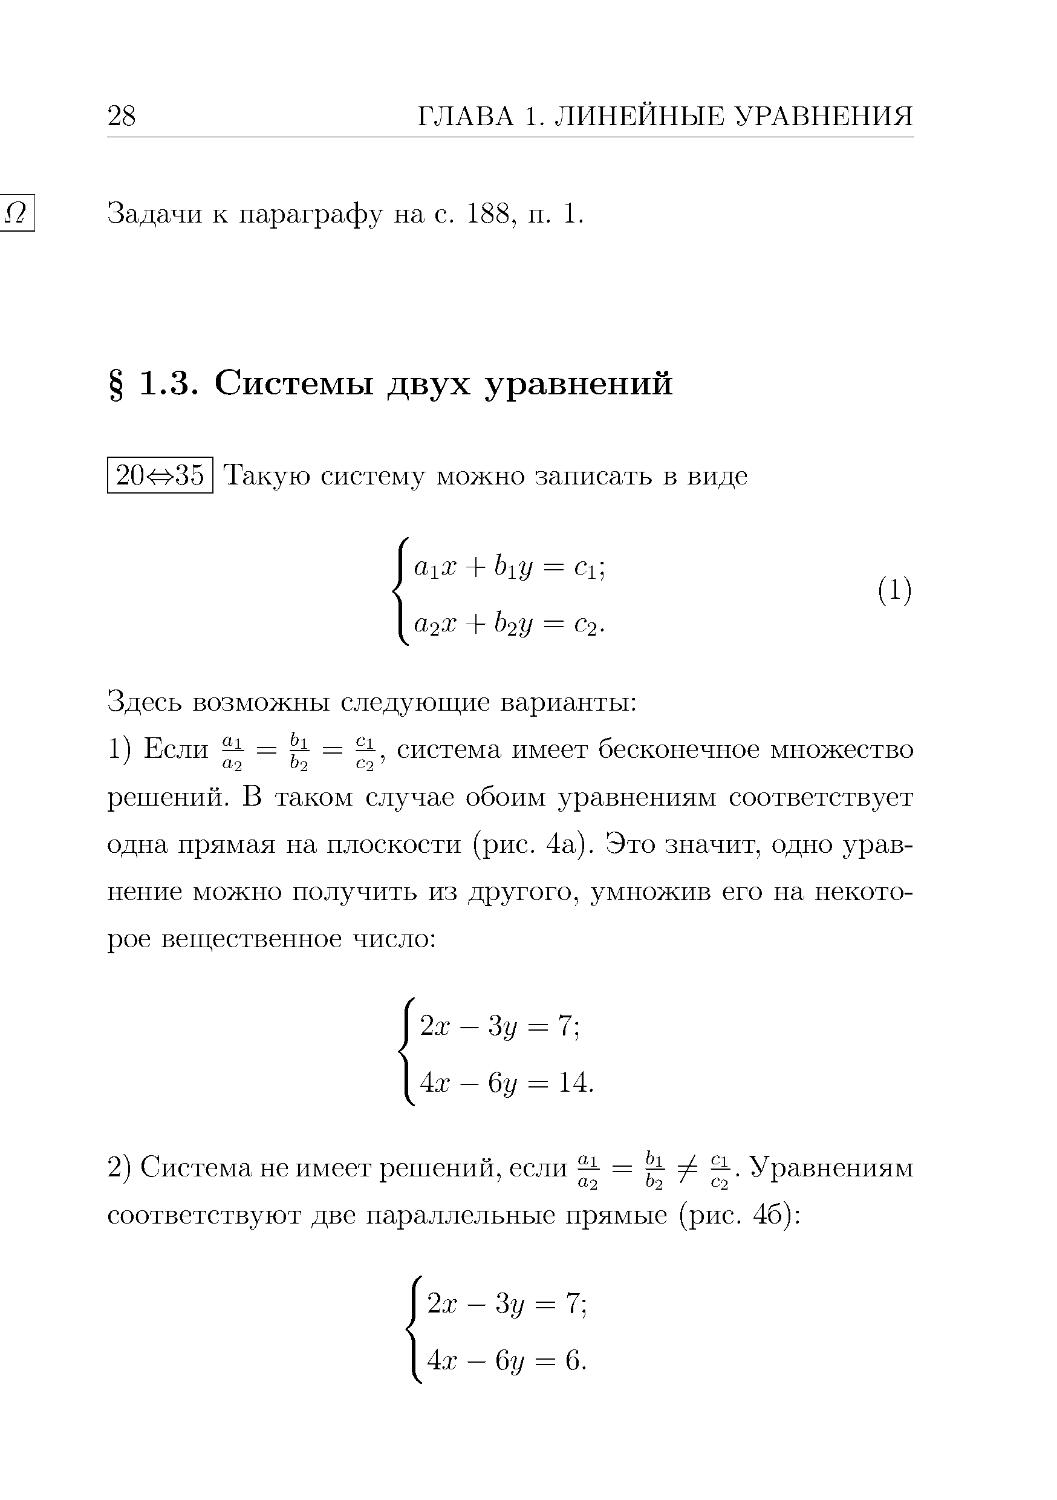 § 1.3. Системы двух уравнений